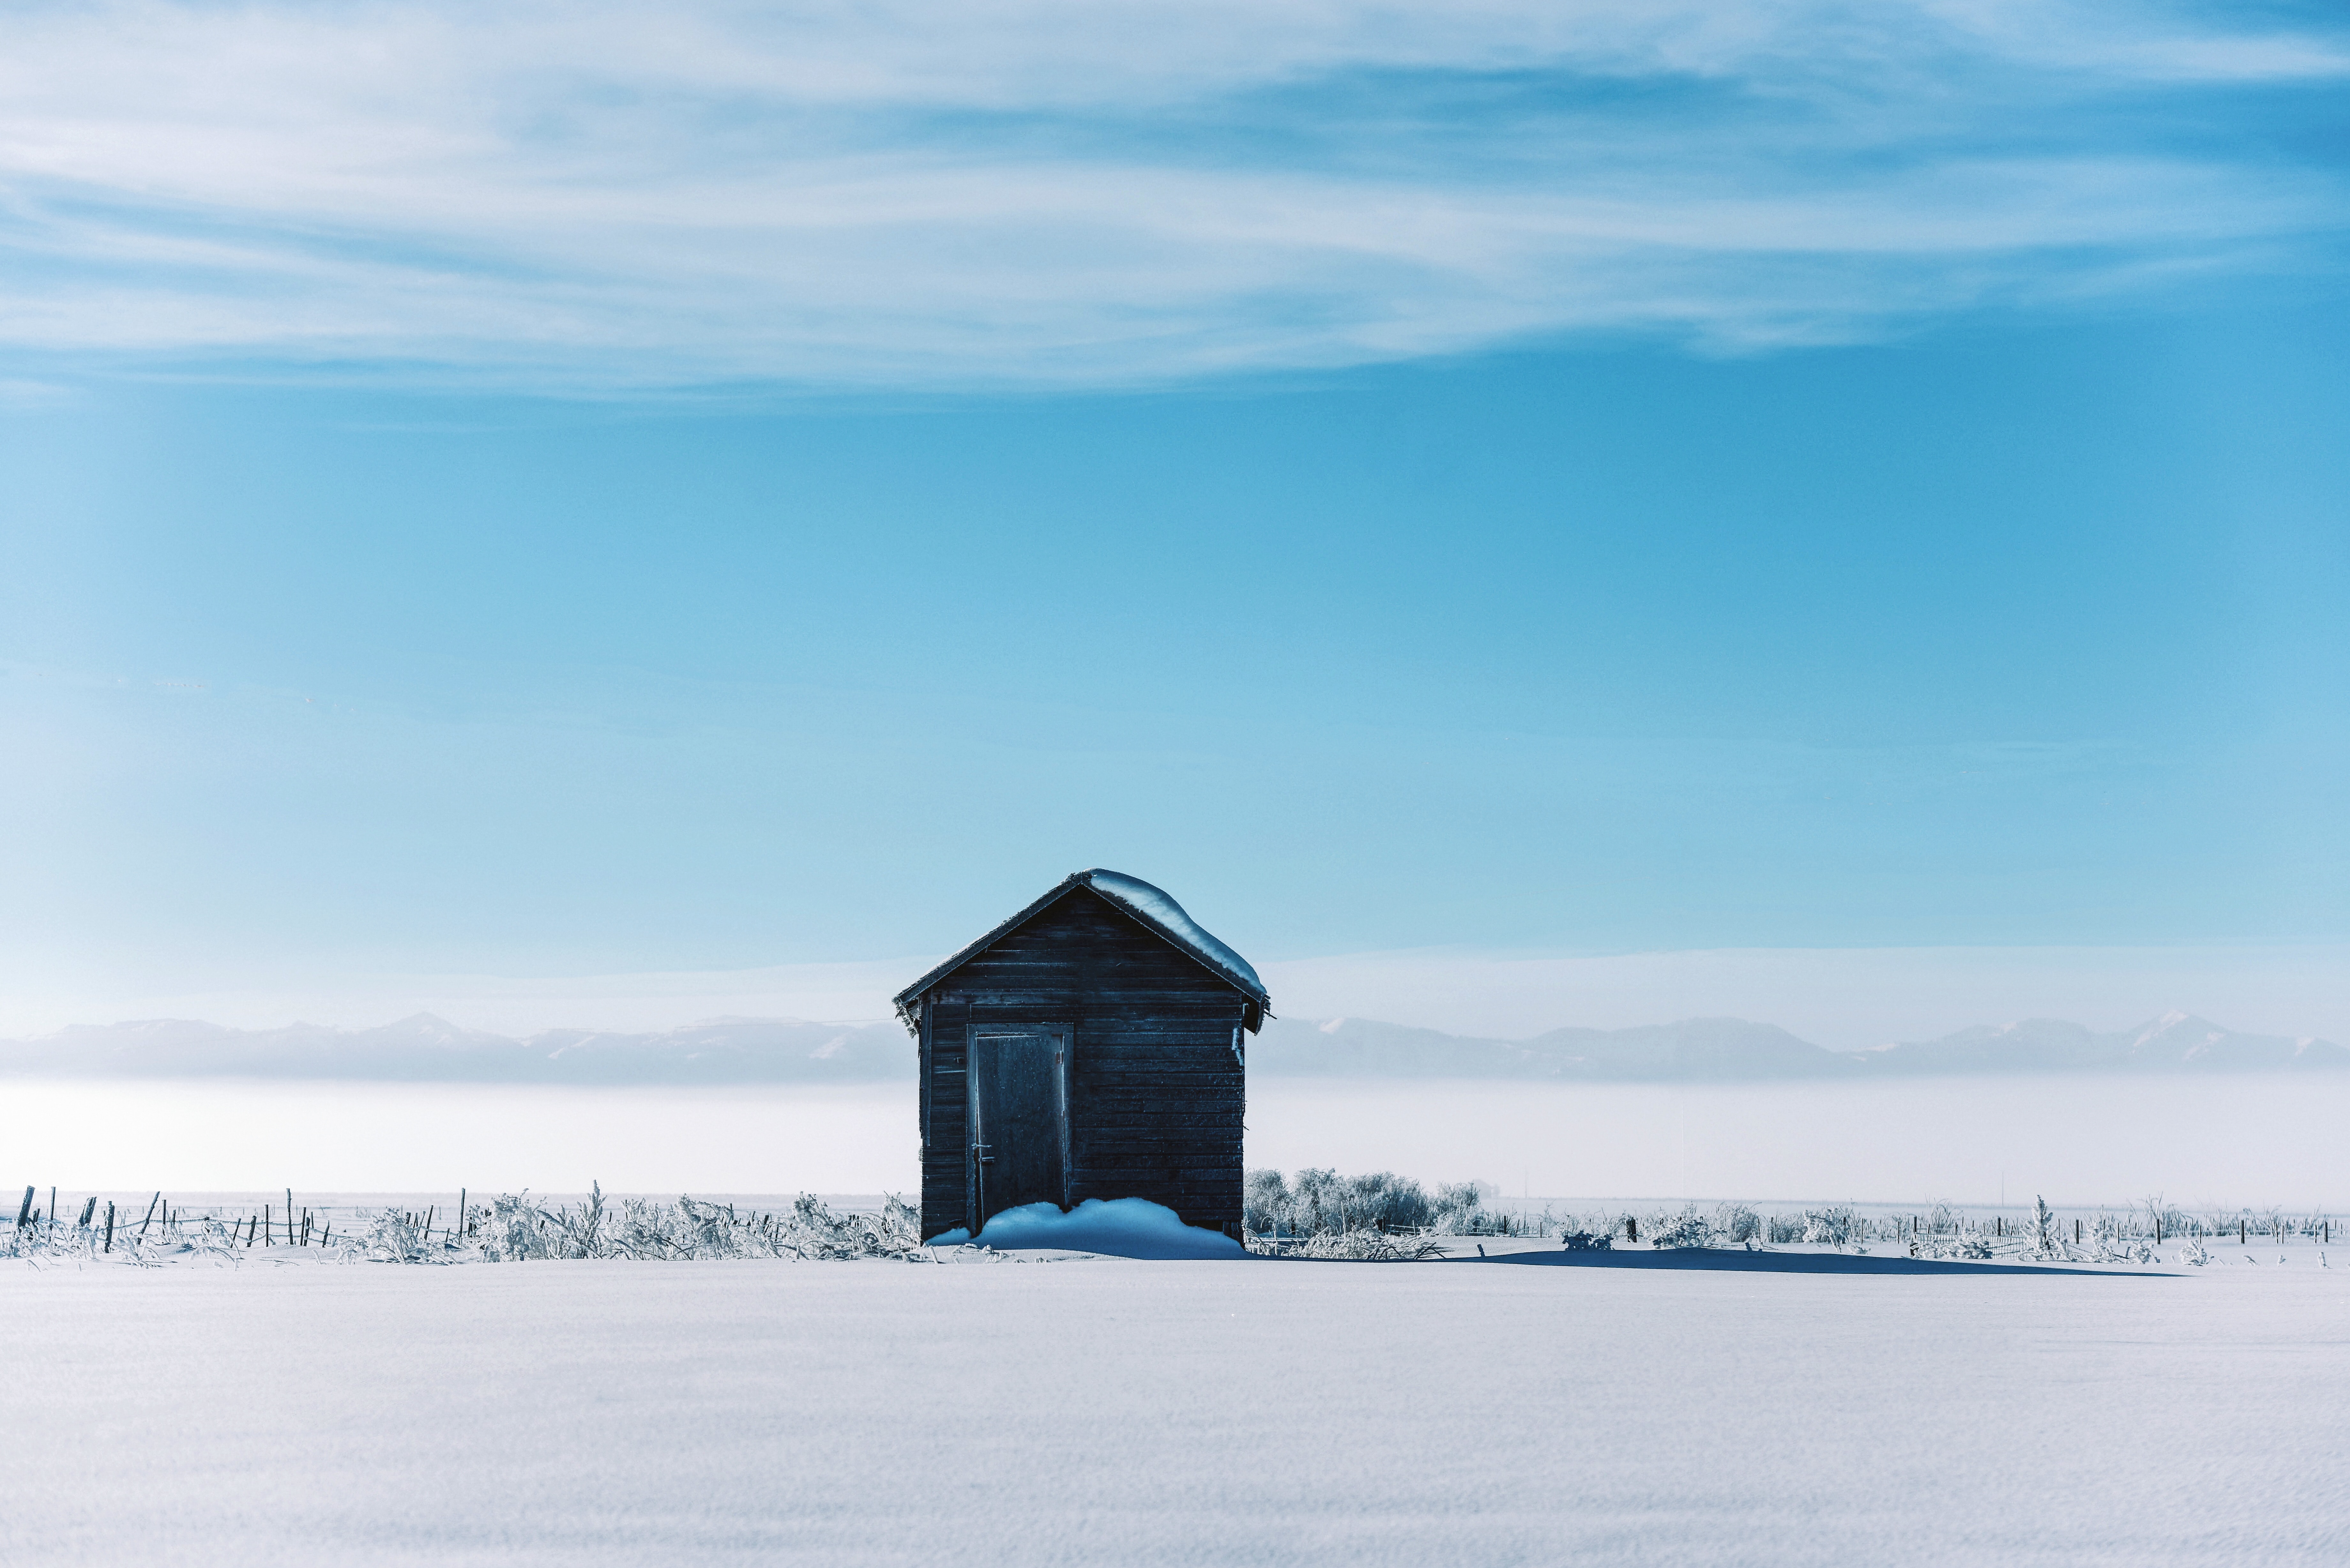 landscape, winter, snow, nature, house, izba HD for desktop 1080p